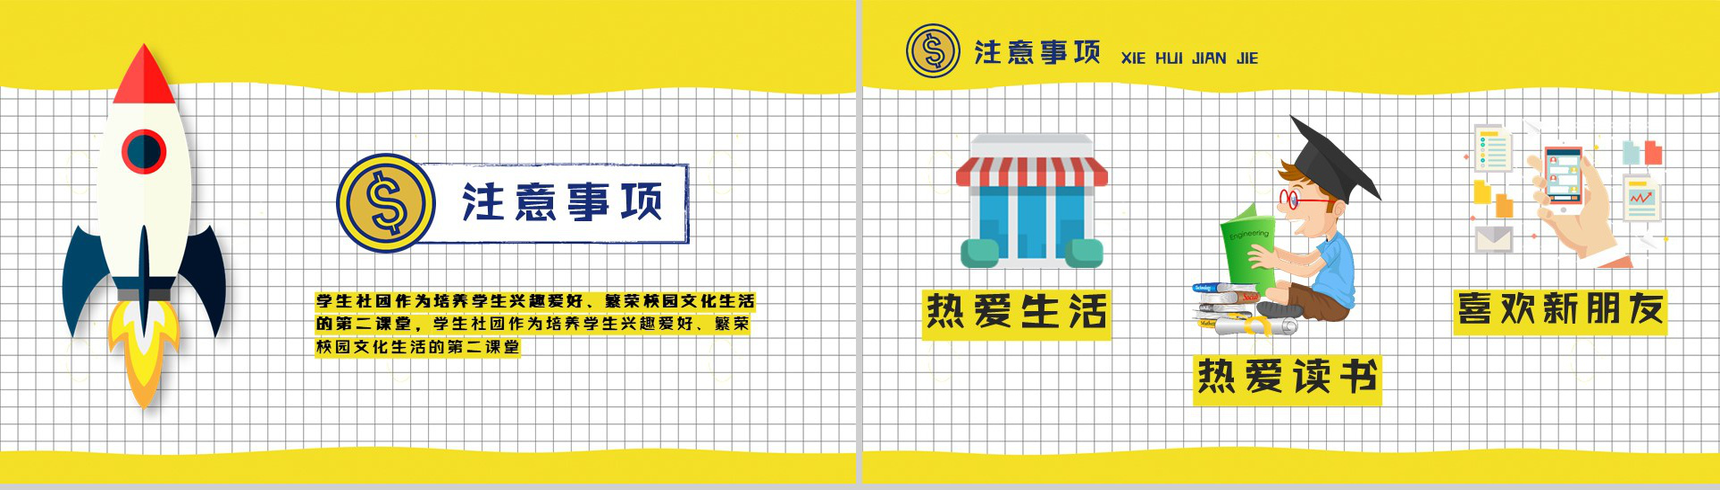 黄色扁平化卡通商务社团招新计划活动方案招聘PPT模板-10